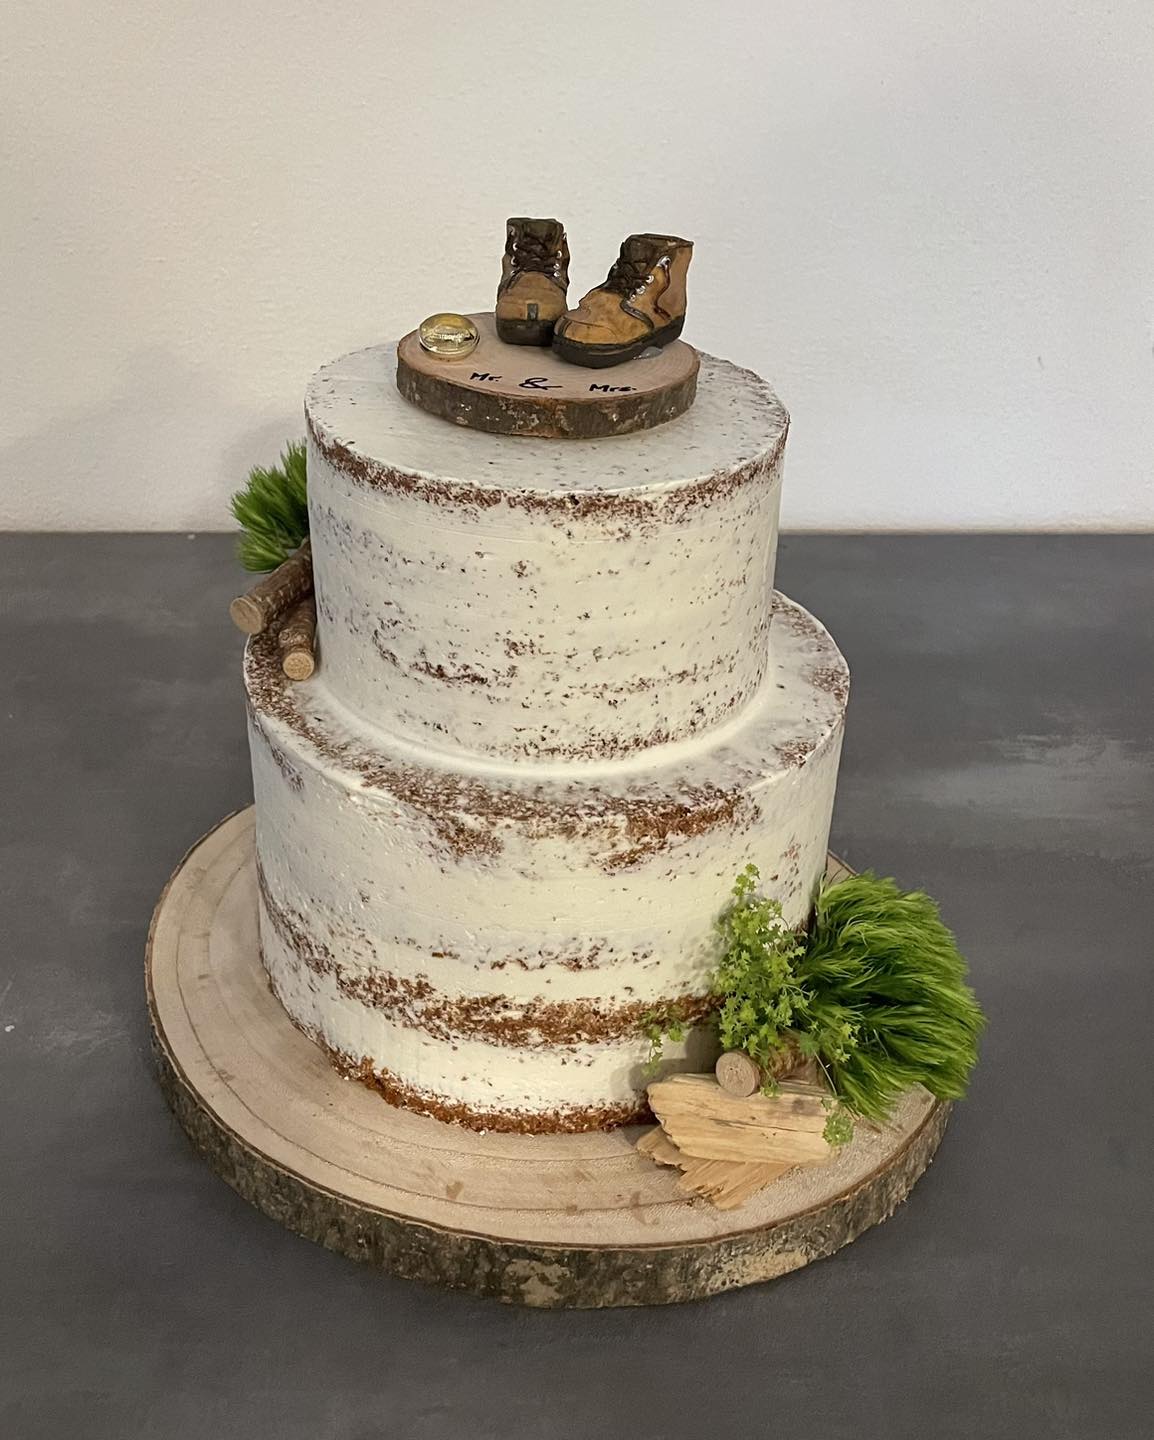 Naked Cake Hochzeitstorte mit Motiv Holz & Wald – Motiv Hochzeitstorte edel – aus der Kärntner Konditorei